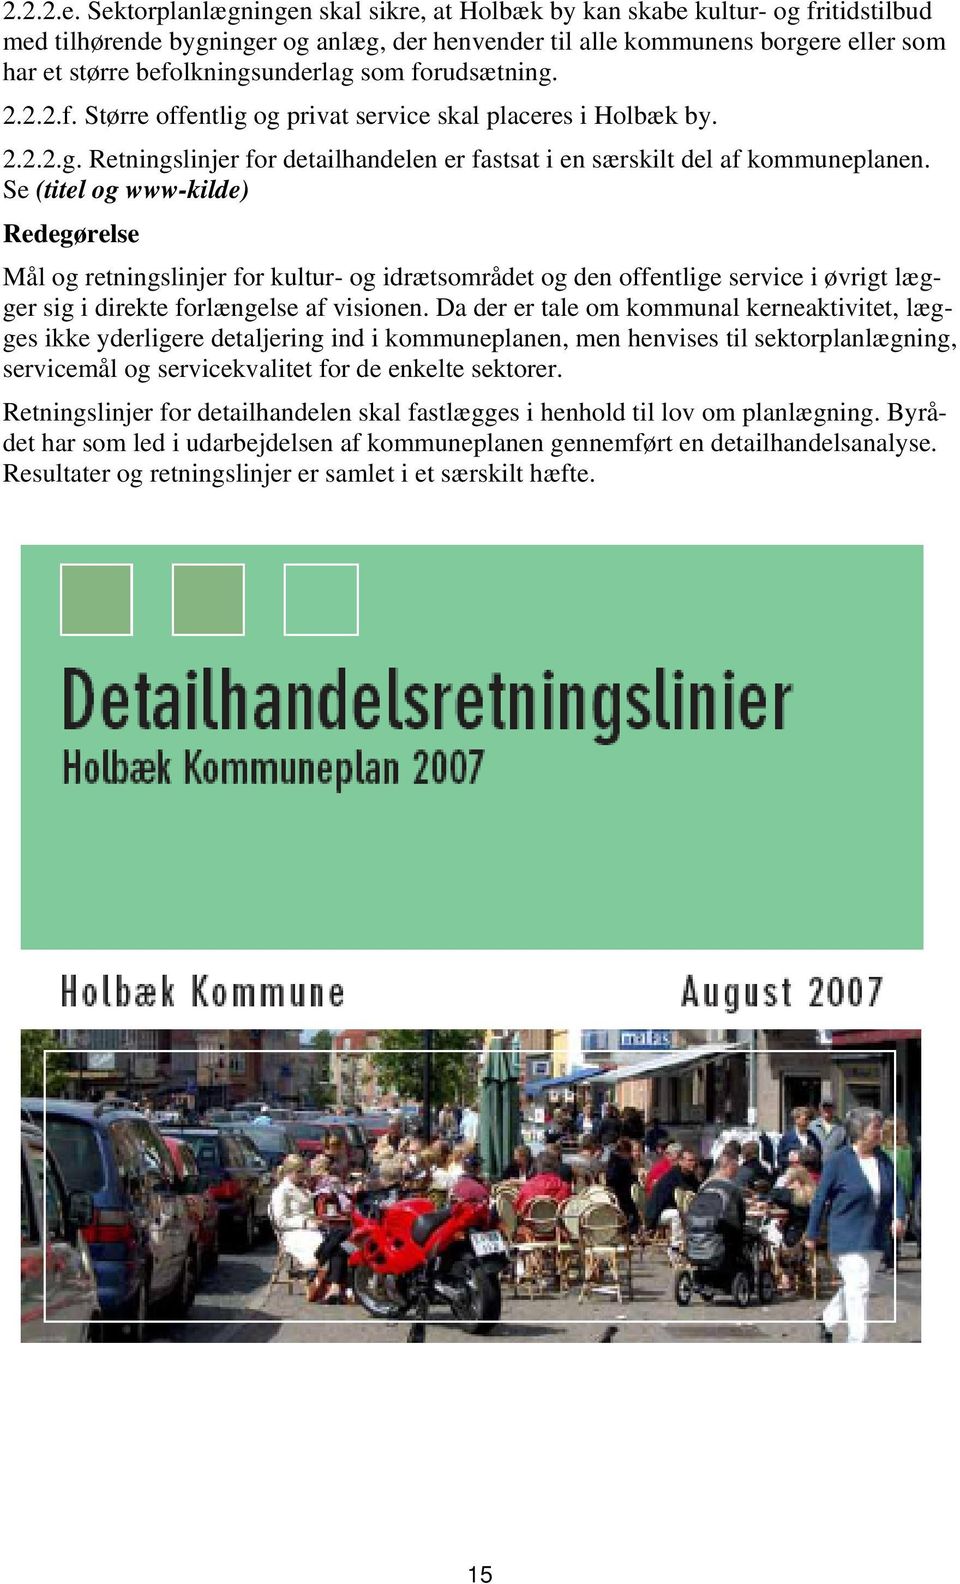 som forudsætning. 2.2.2.f. Større offentlig og privat service skal placeres i Holbæk by. 2.2.2.g. Retningslinjer for detailhandelen er fastsat i en særskilt del af kommuneplanen.